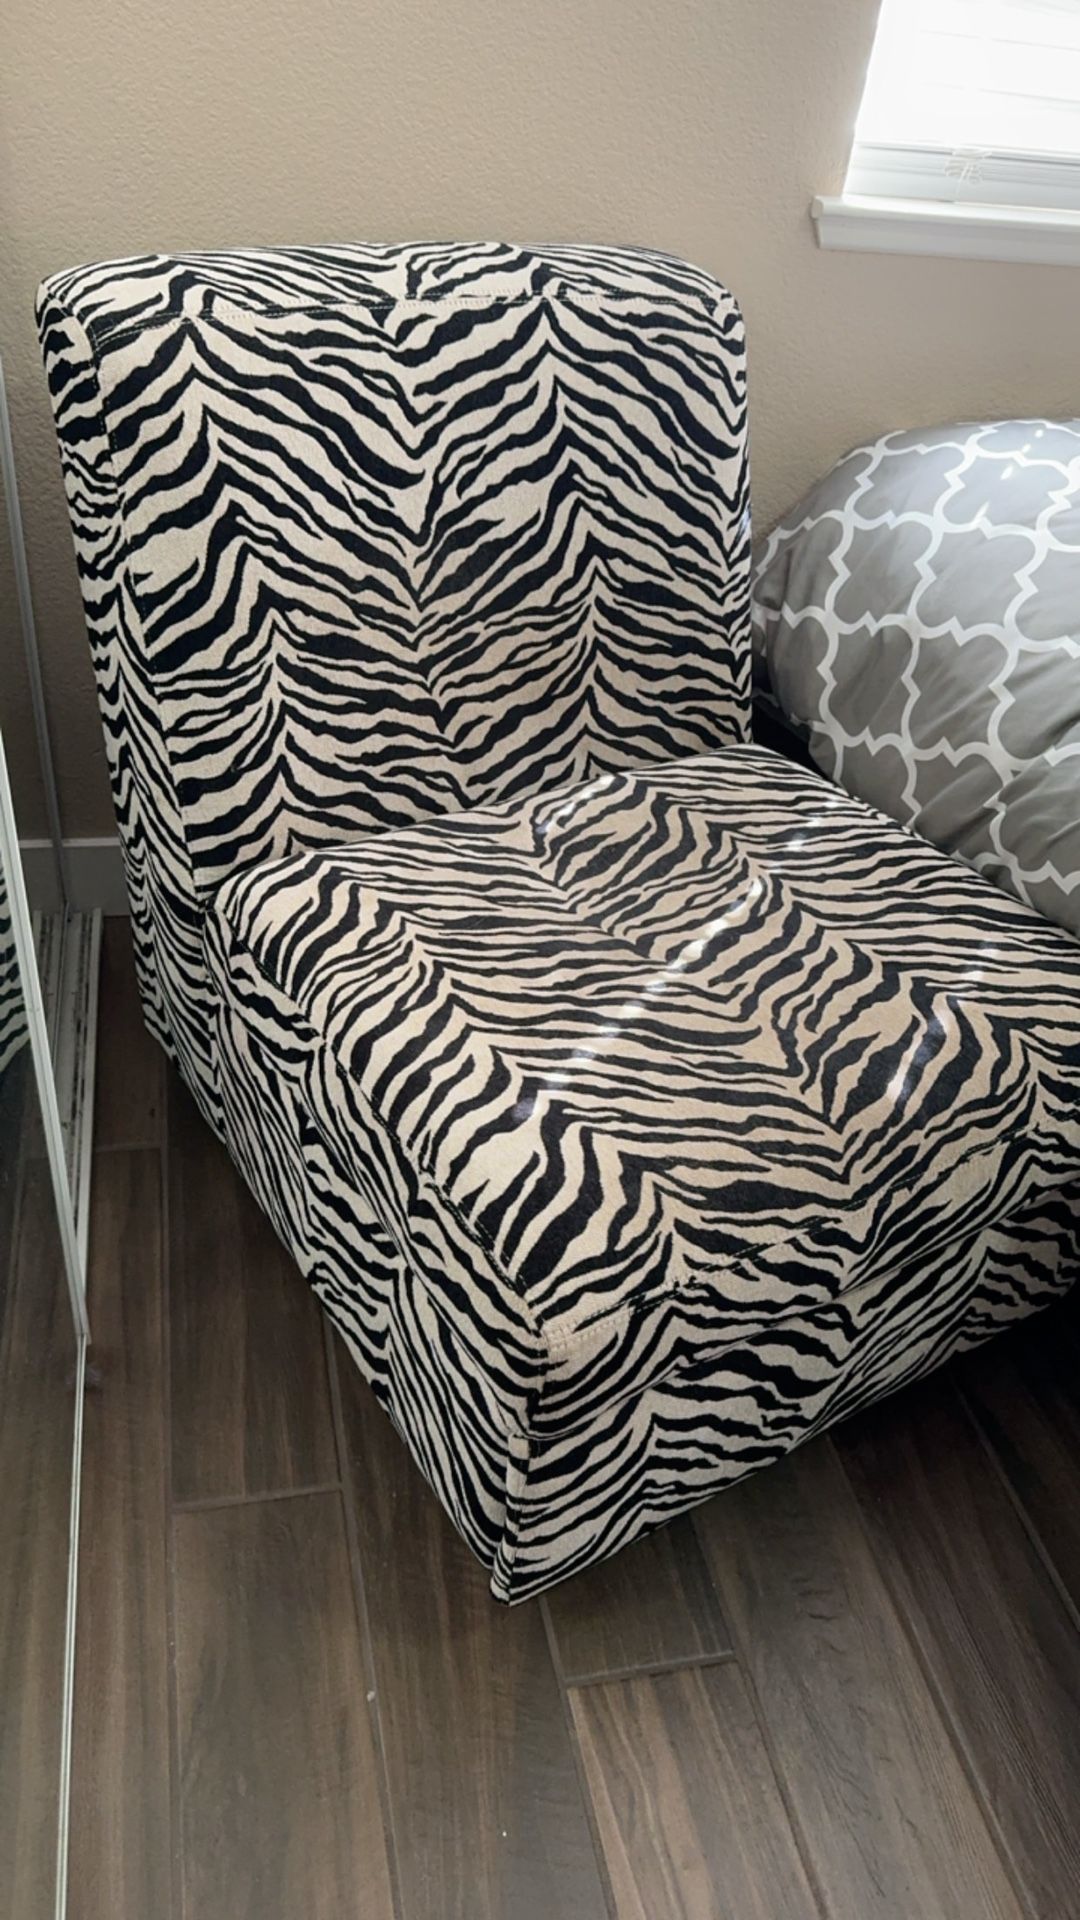 Zebra Oversized Room Chair